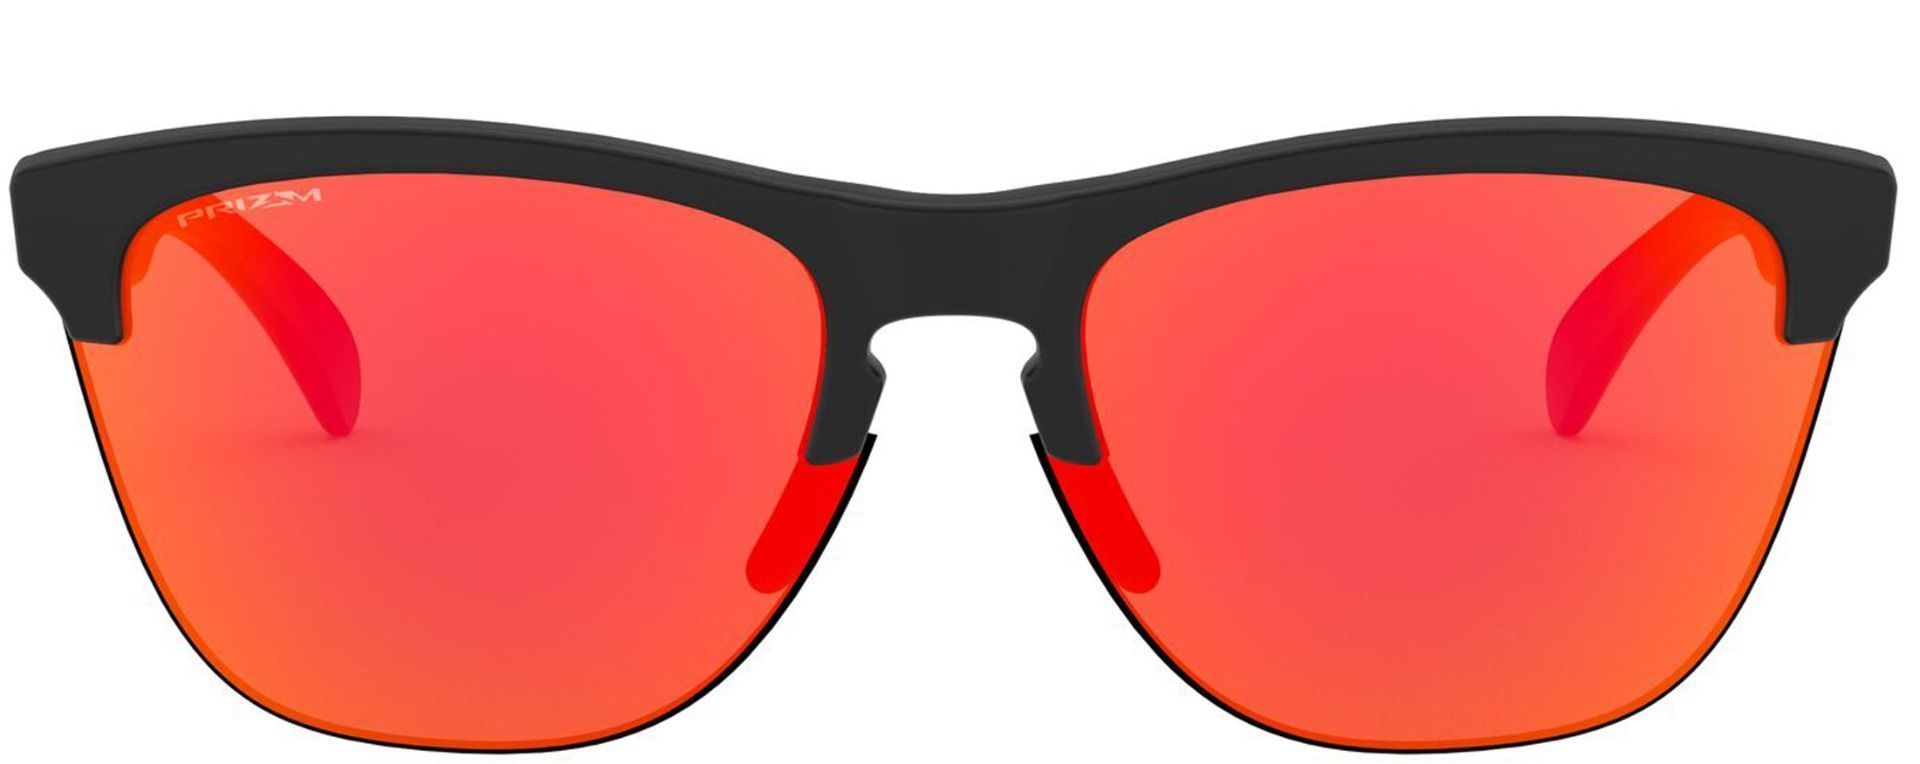 Oakley Frogskins Lite solbriller | Extra Optical